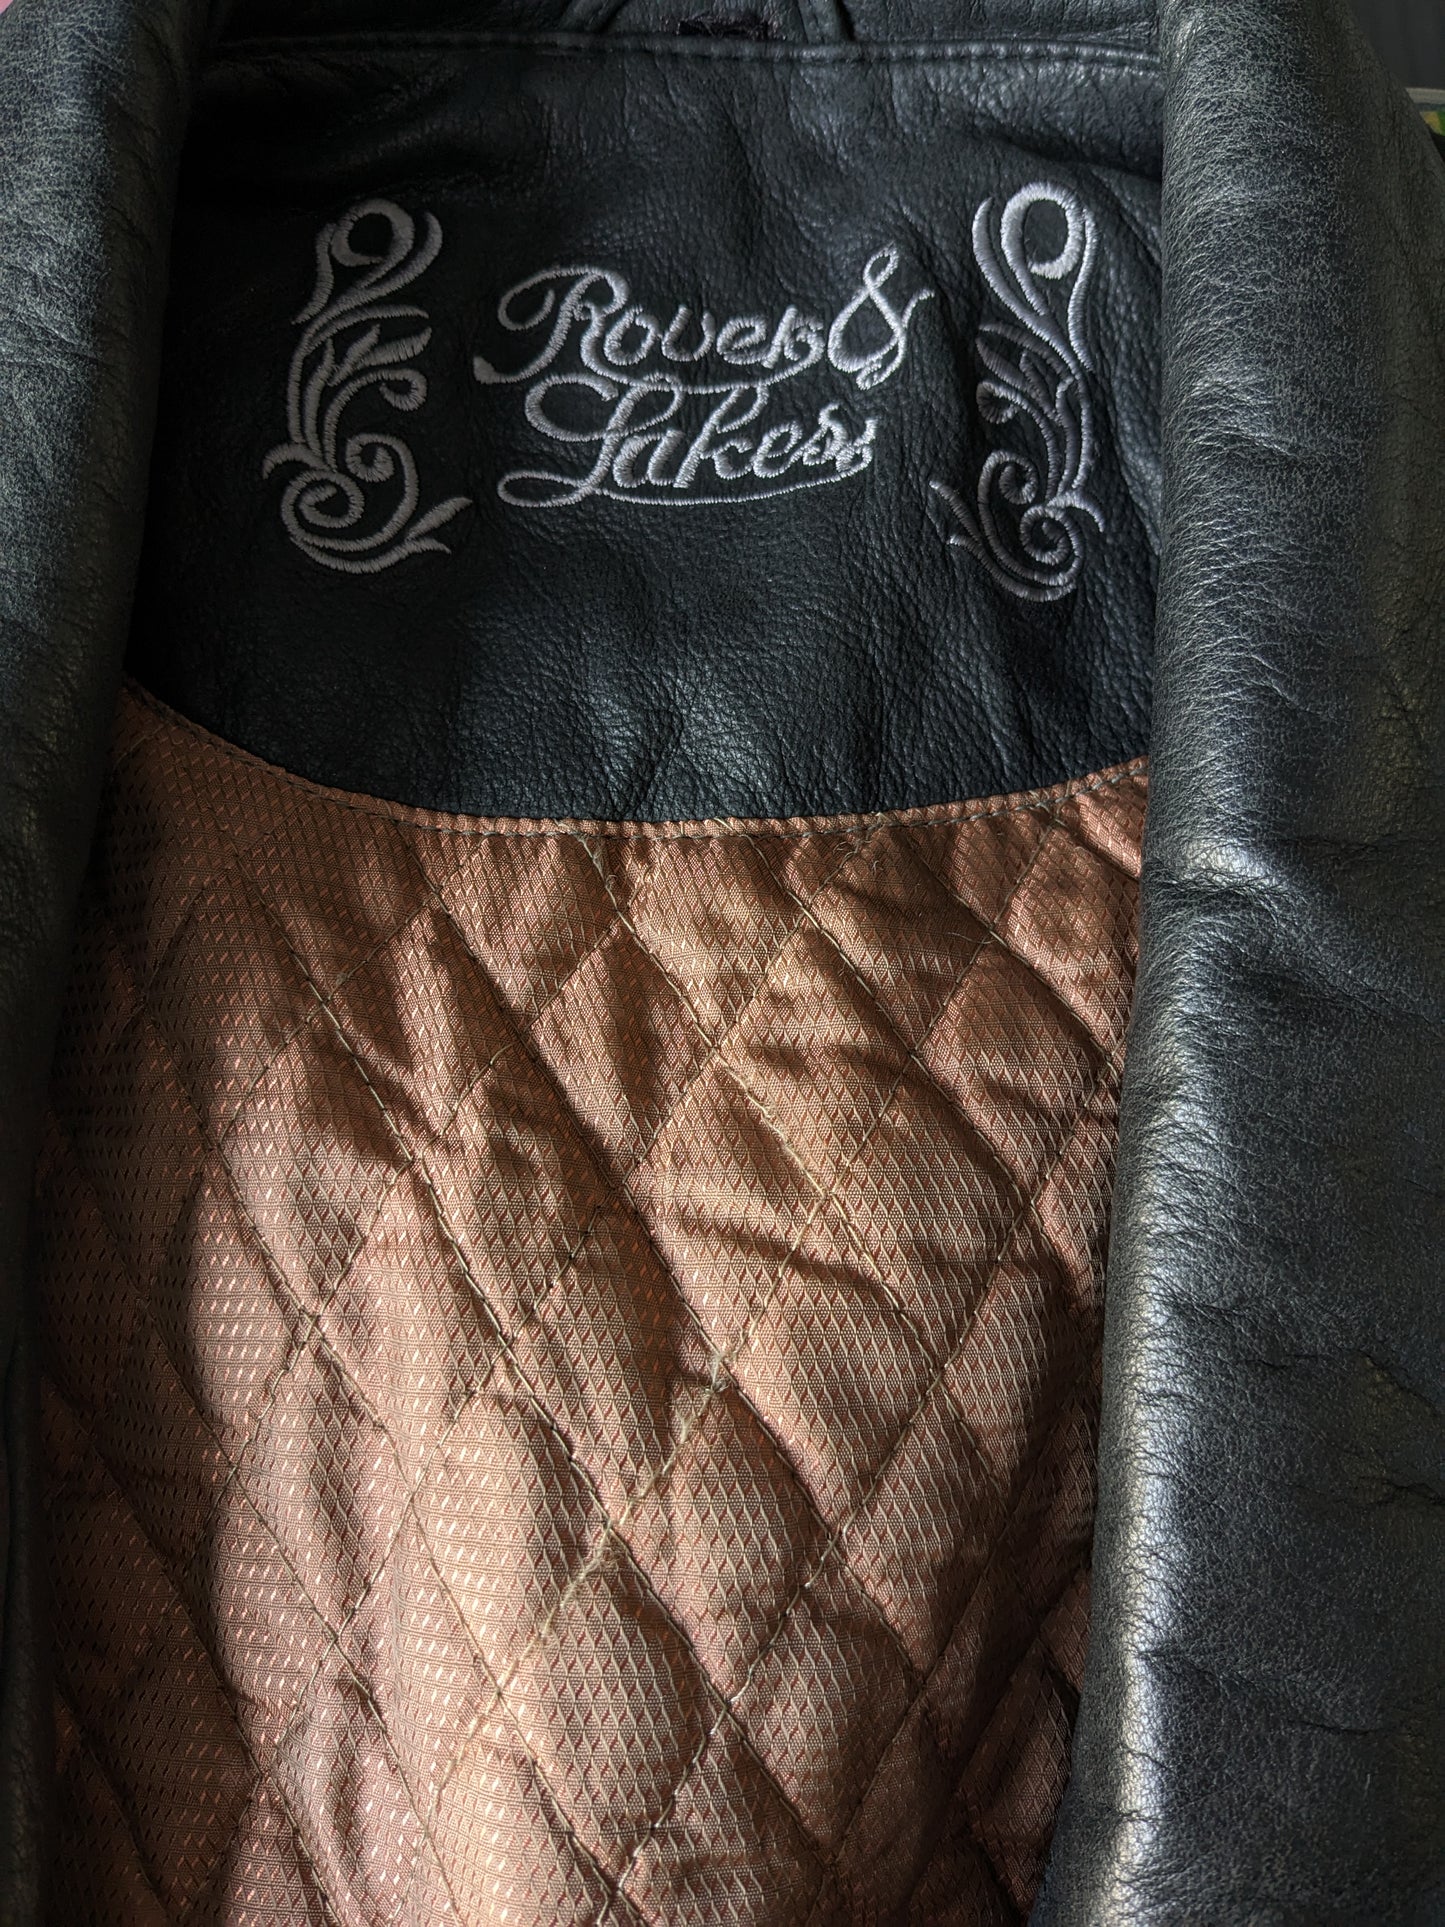 Vintage anni '80 - Rover & Lakes degli anni '90 imparano il corpo più caldo / gilet. Un sacco di borse, 2 tasche interne e foderato leggero. Marrone nero. Taglia XL.